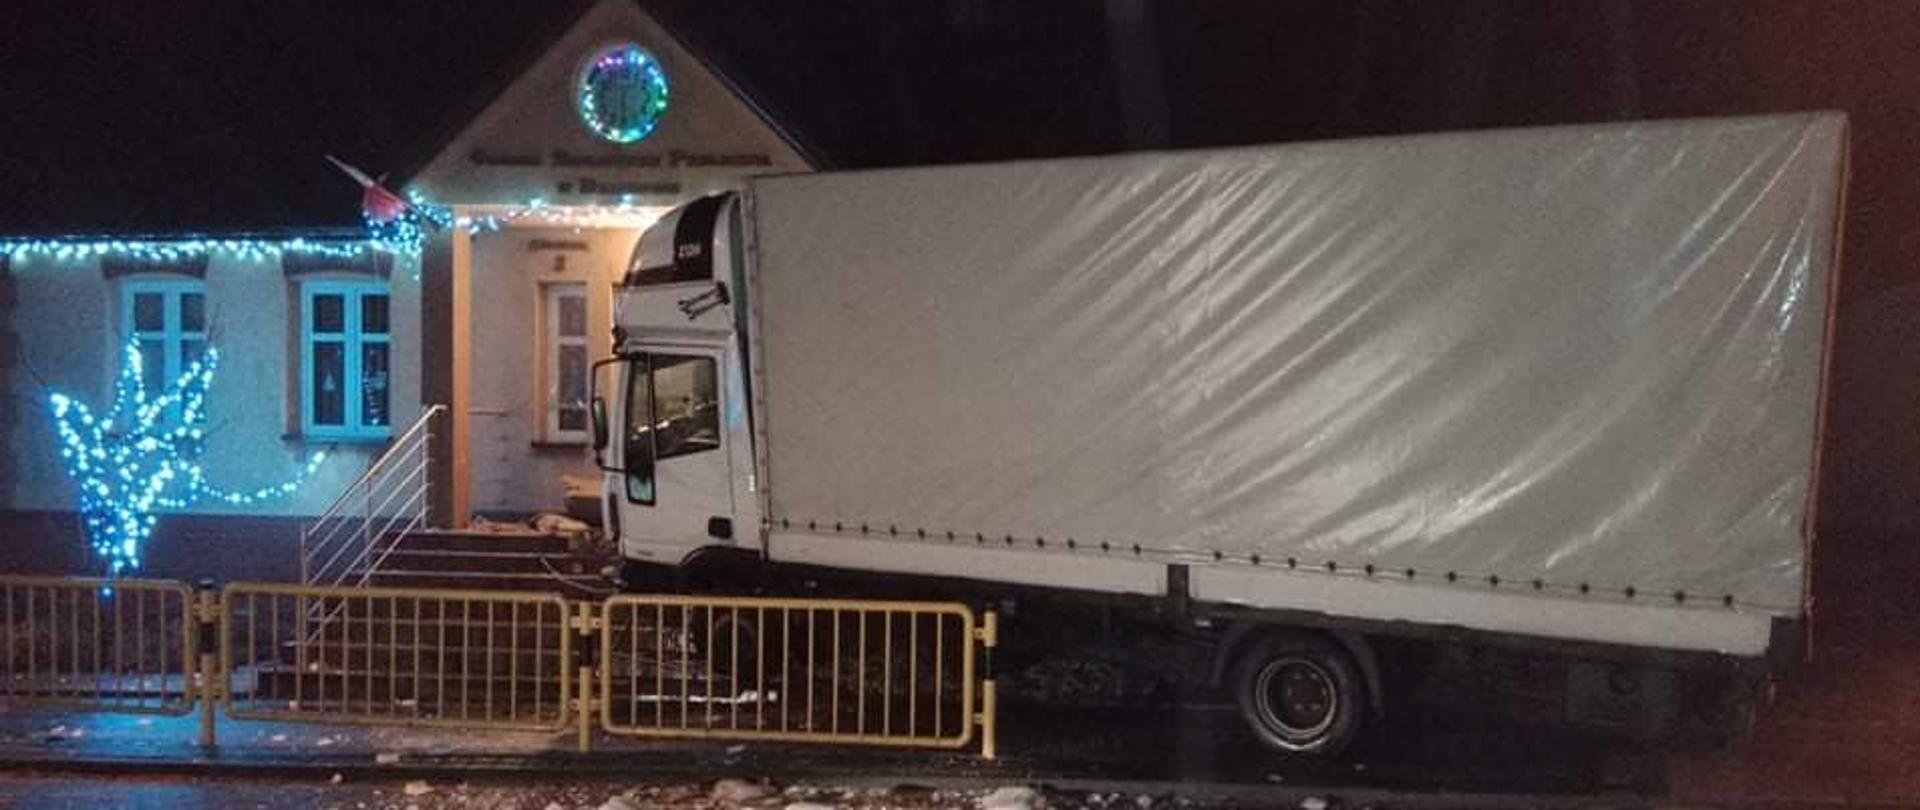 Po prawej stornie zdjęcia znajduje się samochód ciężarowy , który wypadł z drogi i uderzył w budynek Gminnej Biblioteki Publicznej w Dalikowie 